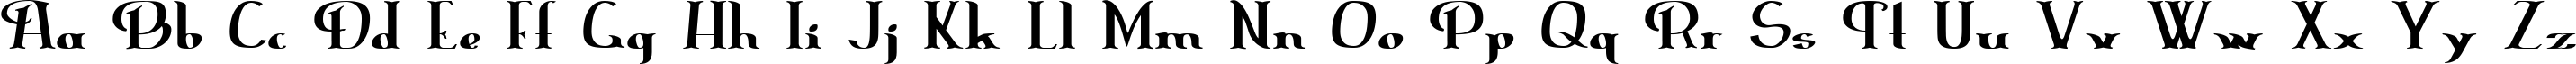 Пример написания английского алфавита шрифтом ErasmusInline